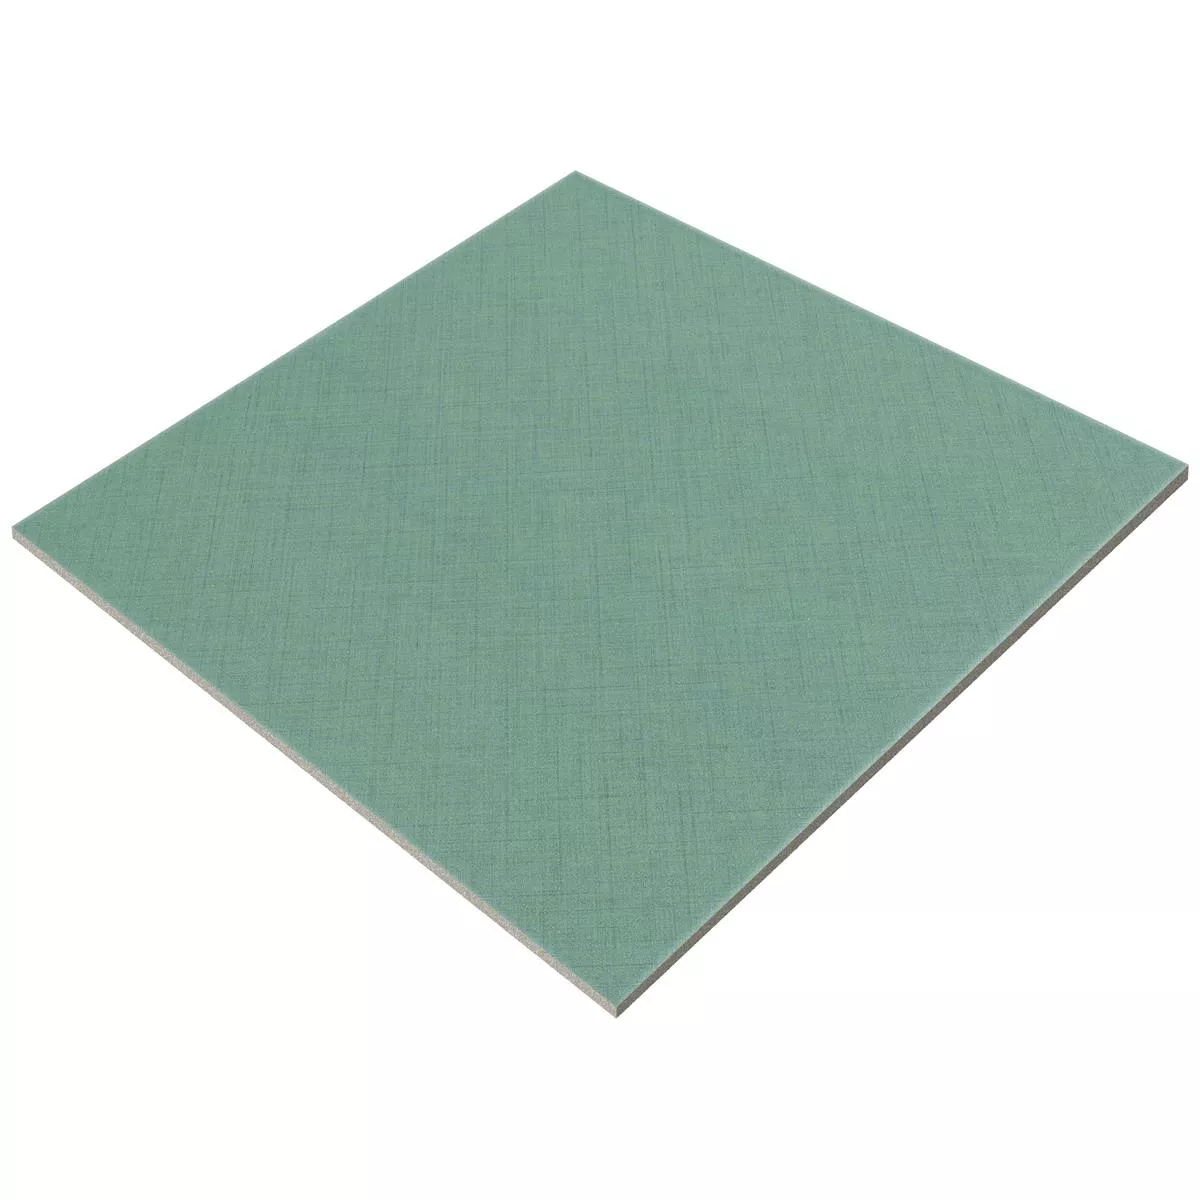 Πλακάκια Δαπέδου Εμφάνιση Tσιμέντου Wildflower Πράσινος Πλακάκι Bάσης 18,5x18,5cm 